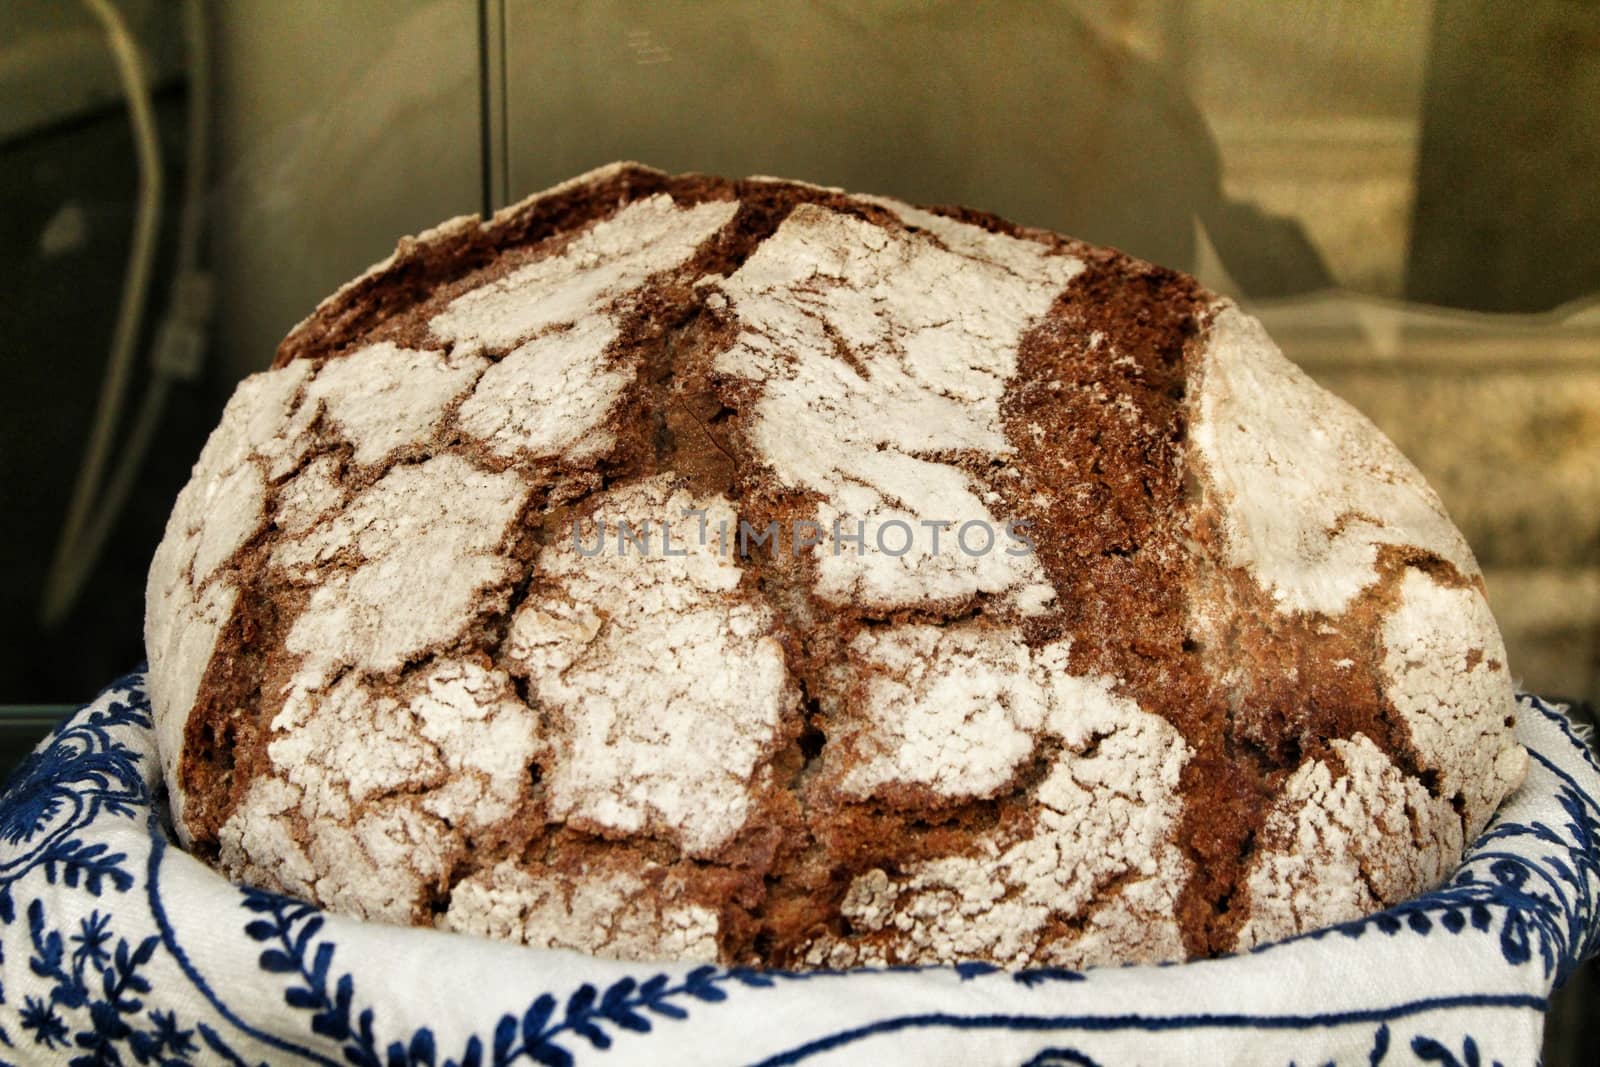 Tasty loaf of bread in a bakery showcase in Spain